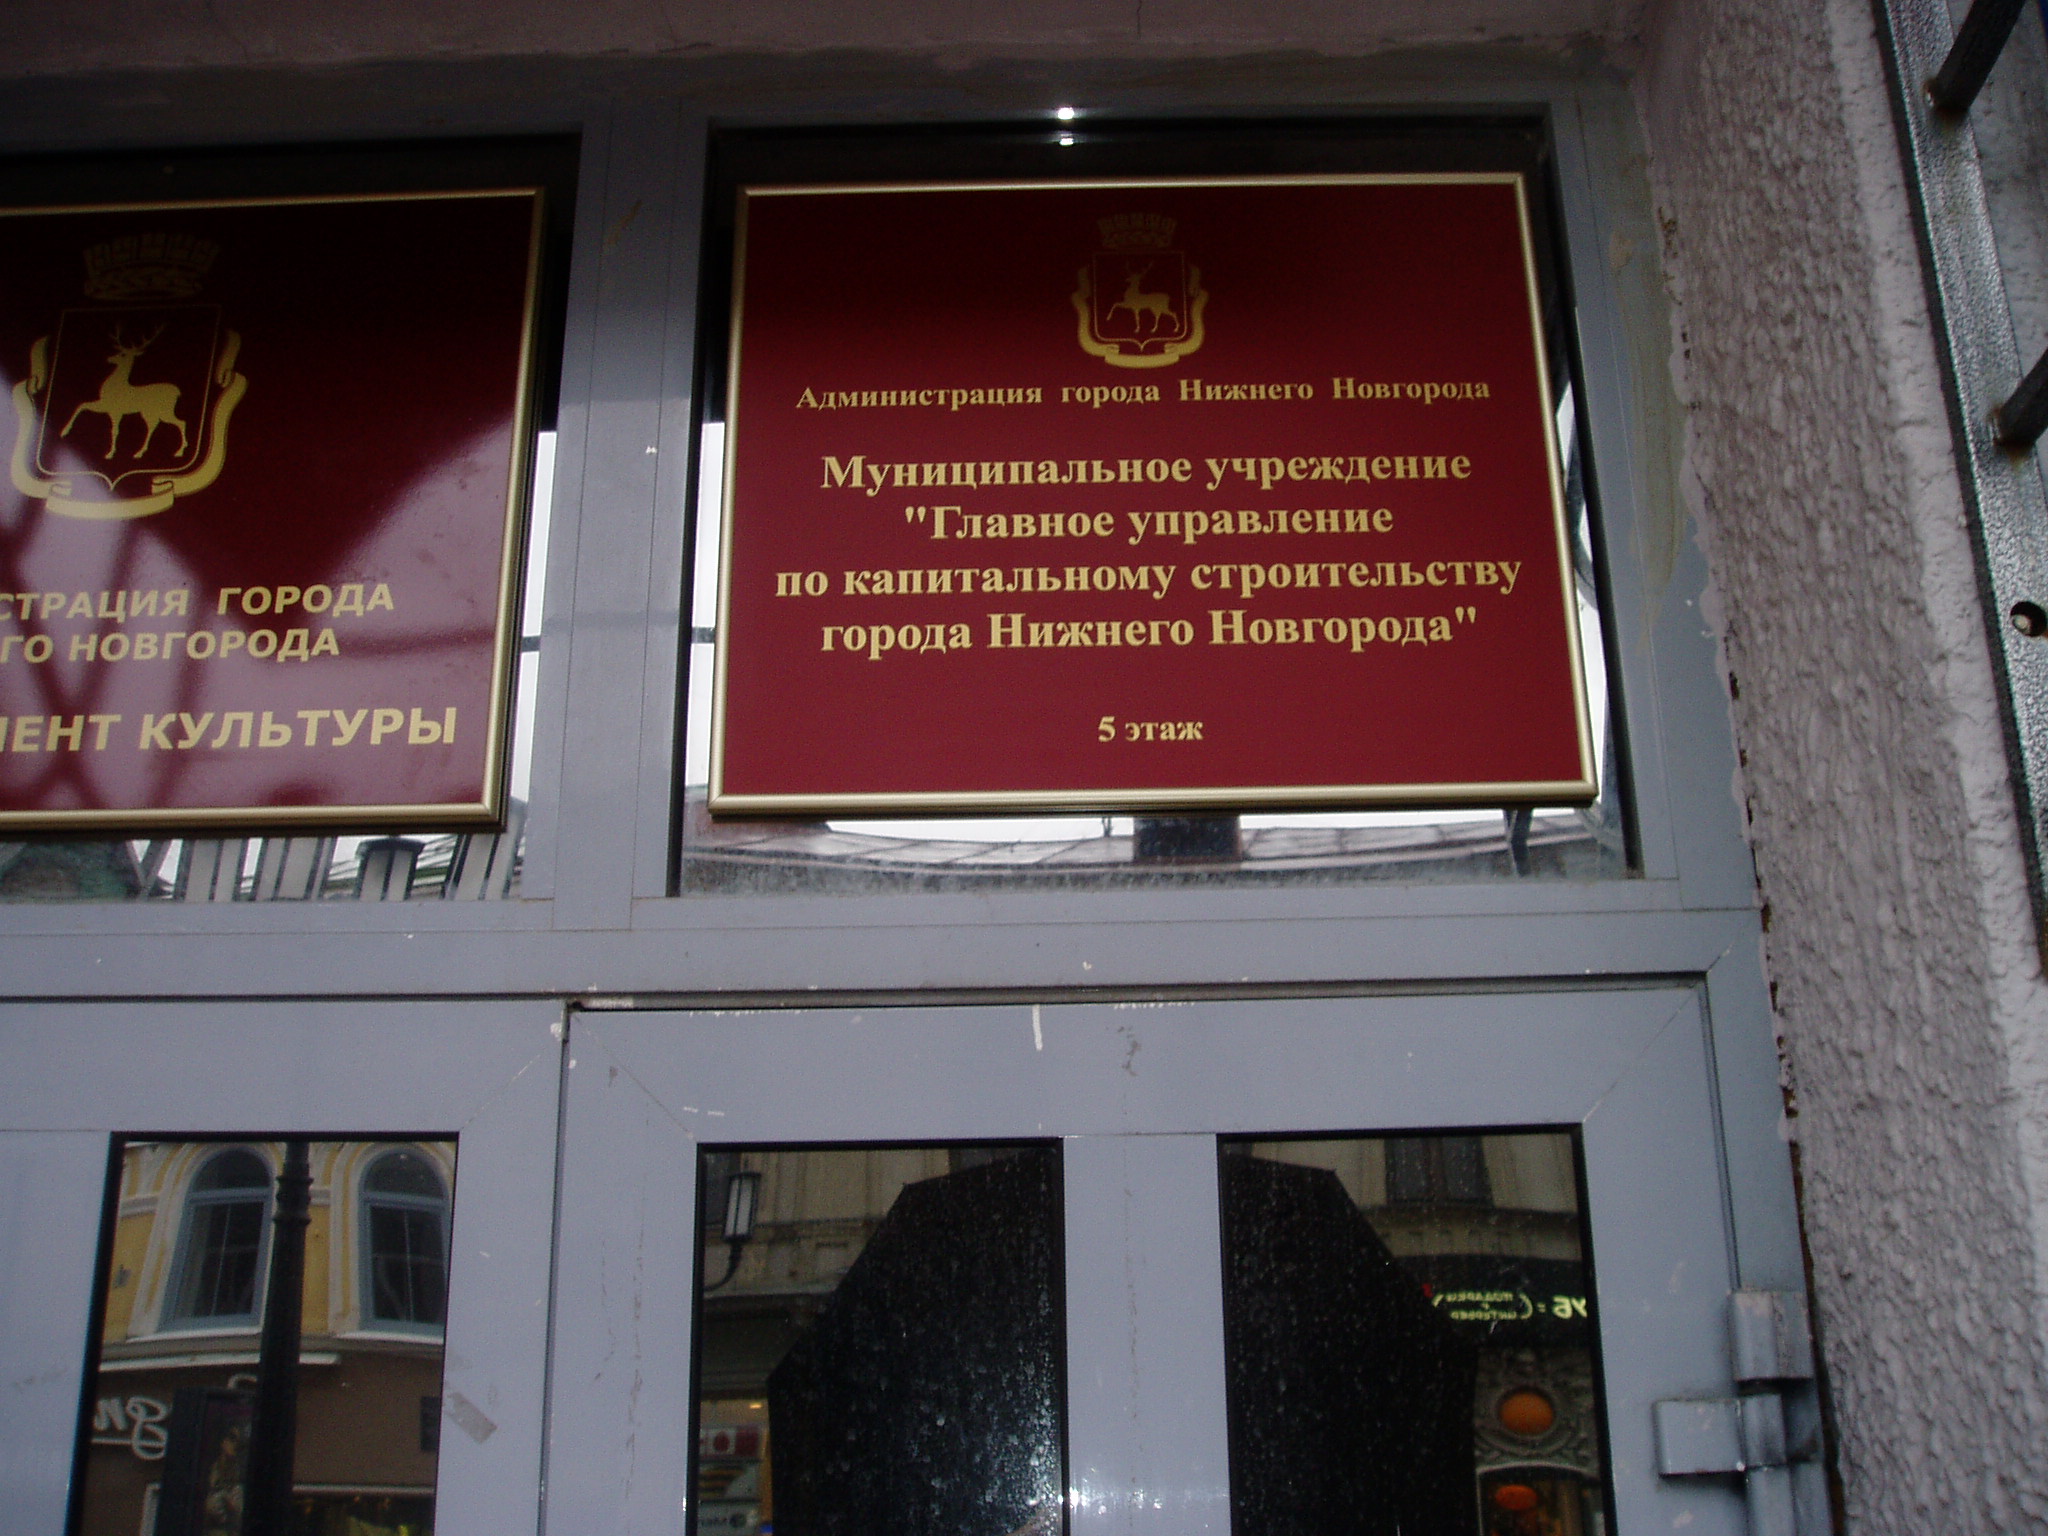 Табличка Главное управление по капитальному строительству г. Н.Новгорода